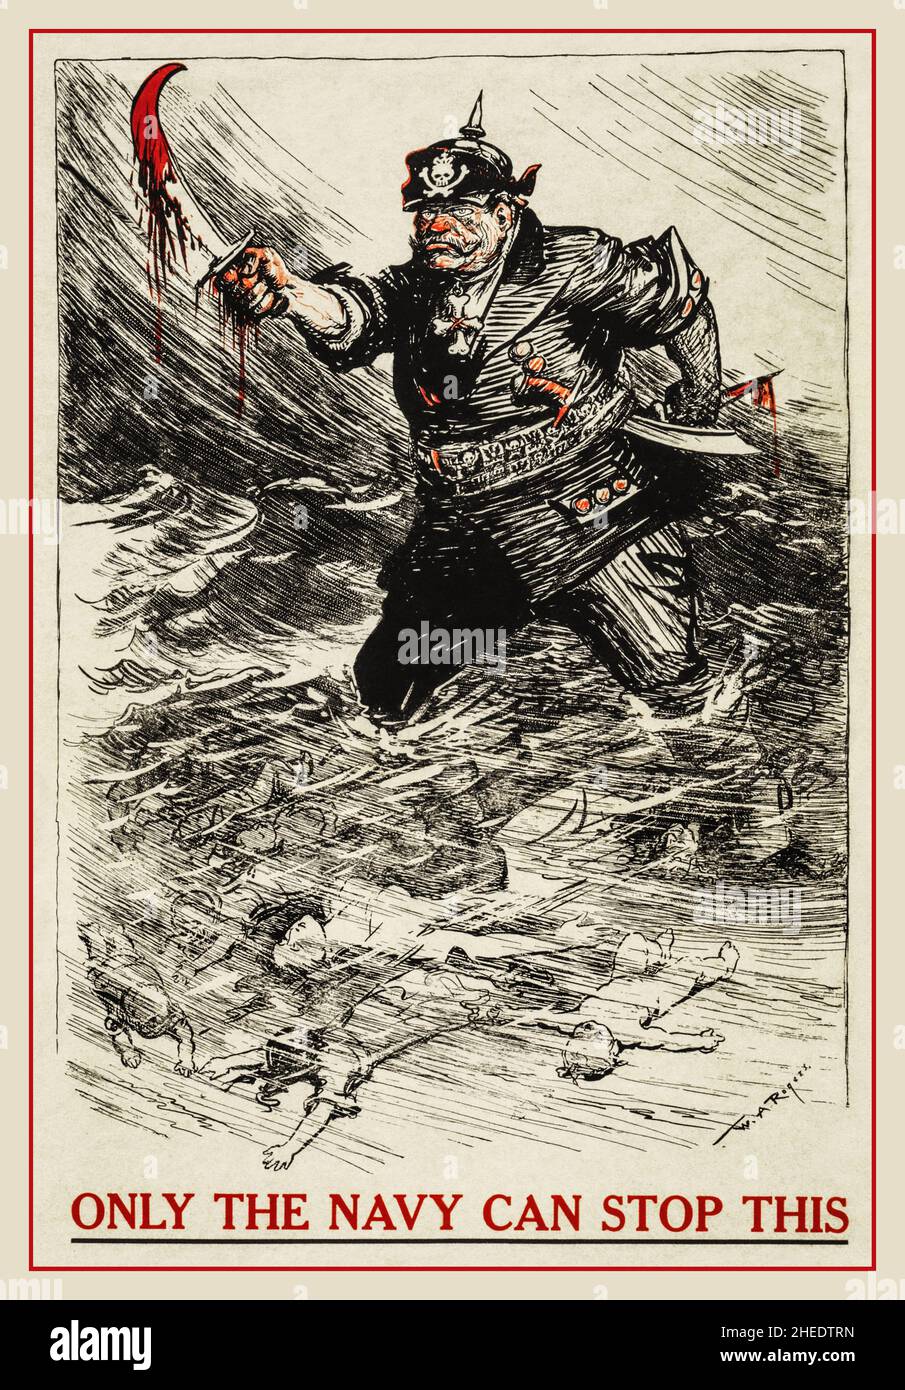 Un cartel de la WWI American Recruitment, usando una caricatura de New York Herald de W.A. Rogers. Muestra a un alemán con una copa manchada de sangre que vadea a través de un mar de cadáveres, con el eslogan 'Only the Navy Can Stop This'. Referencia a la campaña U-boat hundiendo buques civiles, como la Luisitania World War 1 Primera Guerra Mundial EE.UU. Alemania Foto de stock